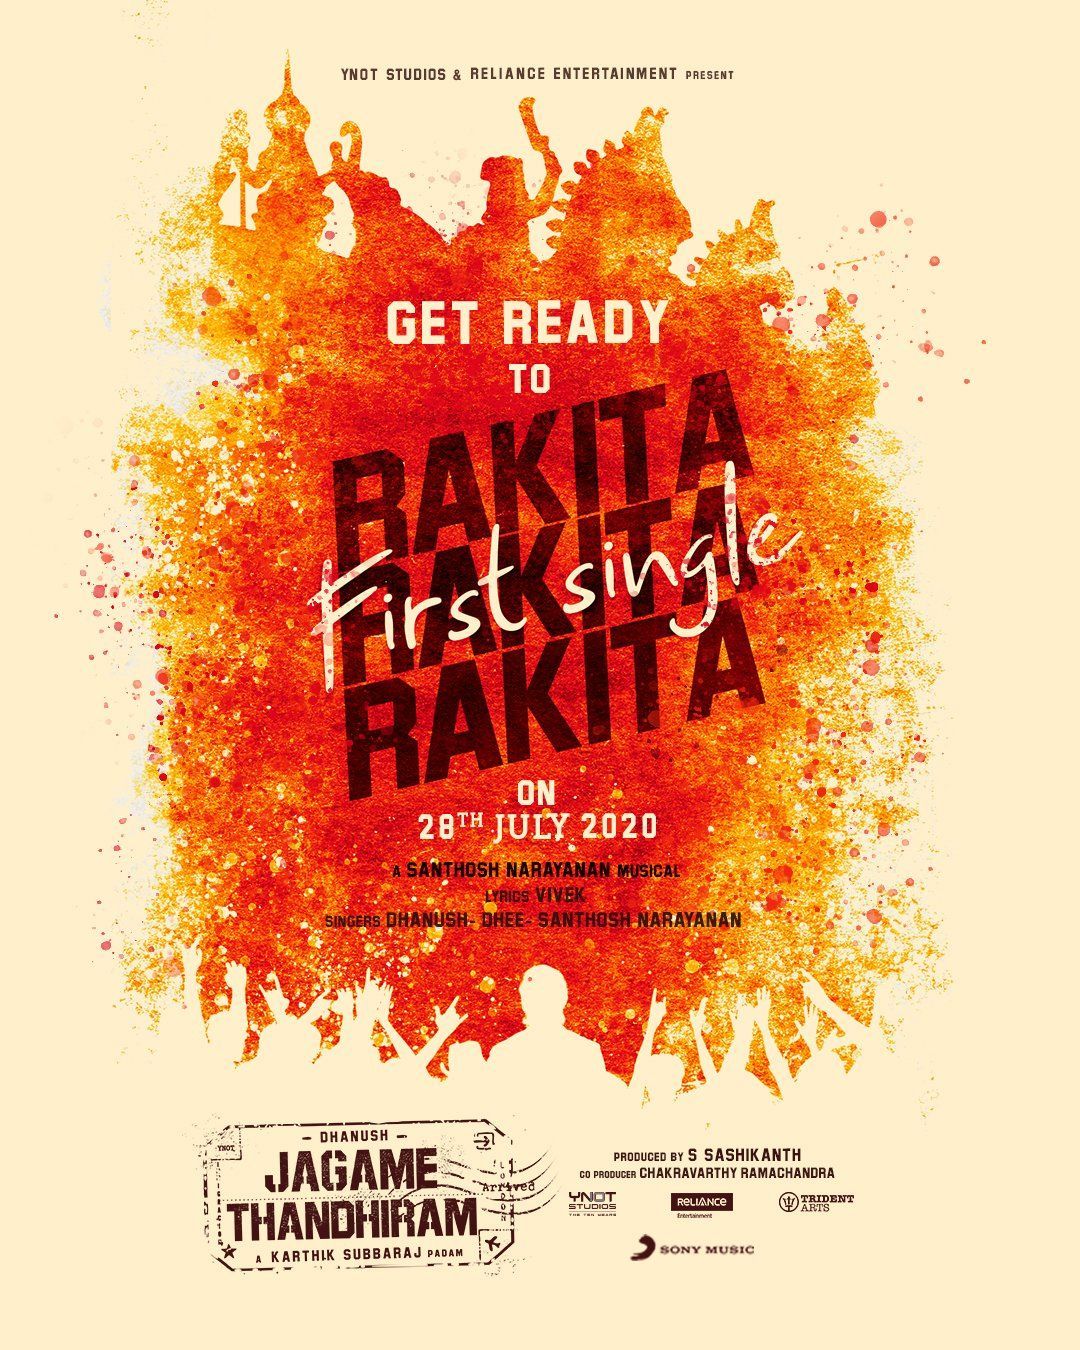 Rakita Rakita Rakita, Jagame Thandhiram 1st Single from July 28. Sony music, Sony, Music